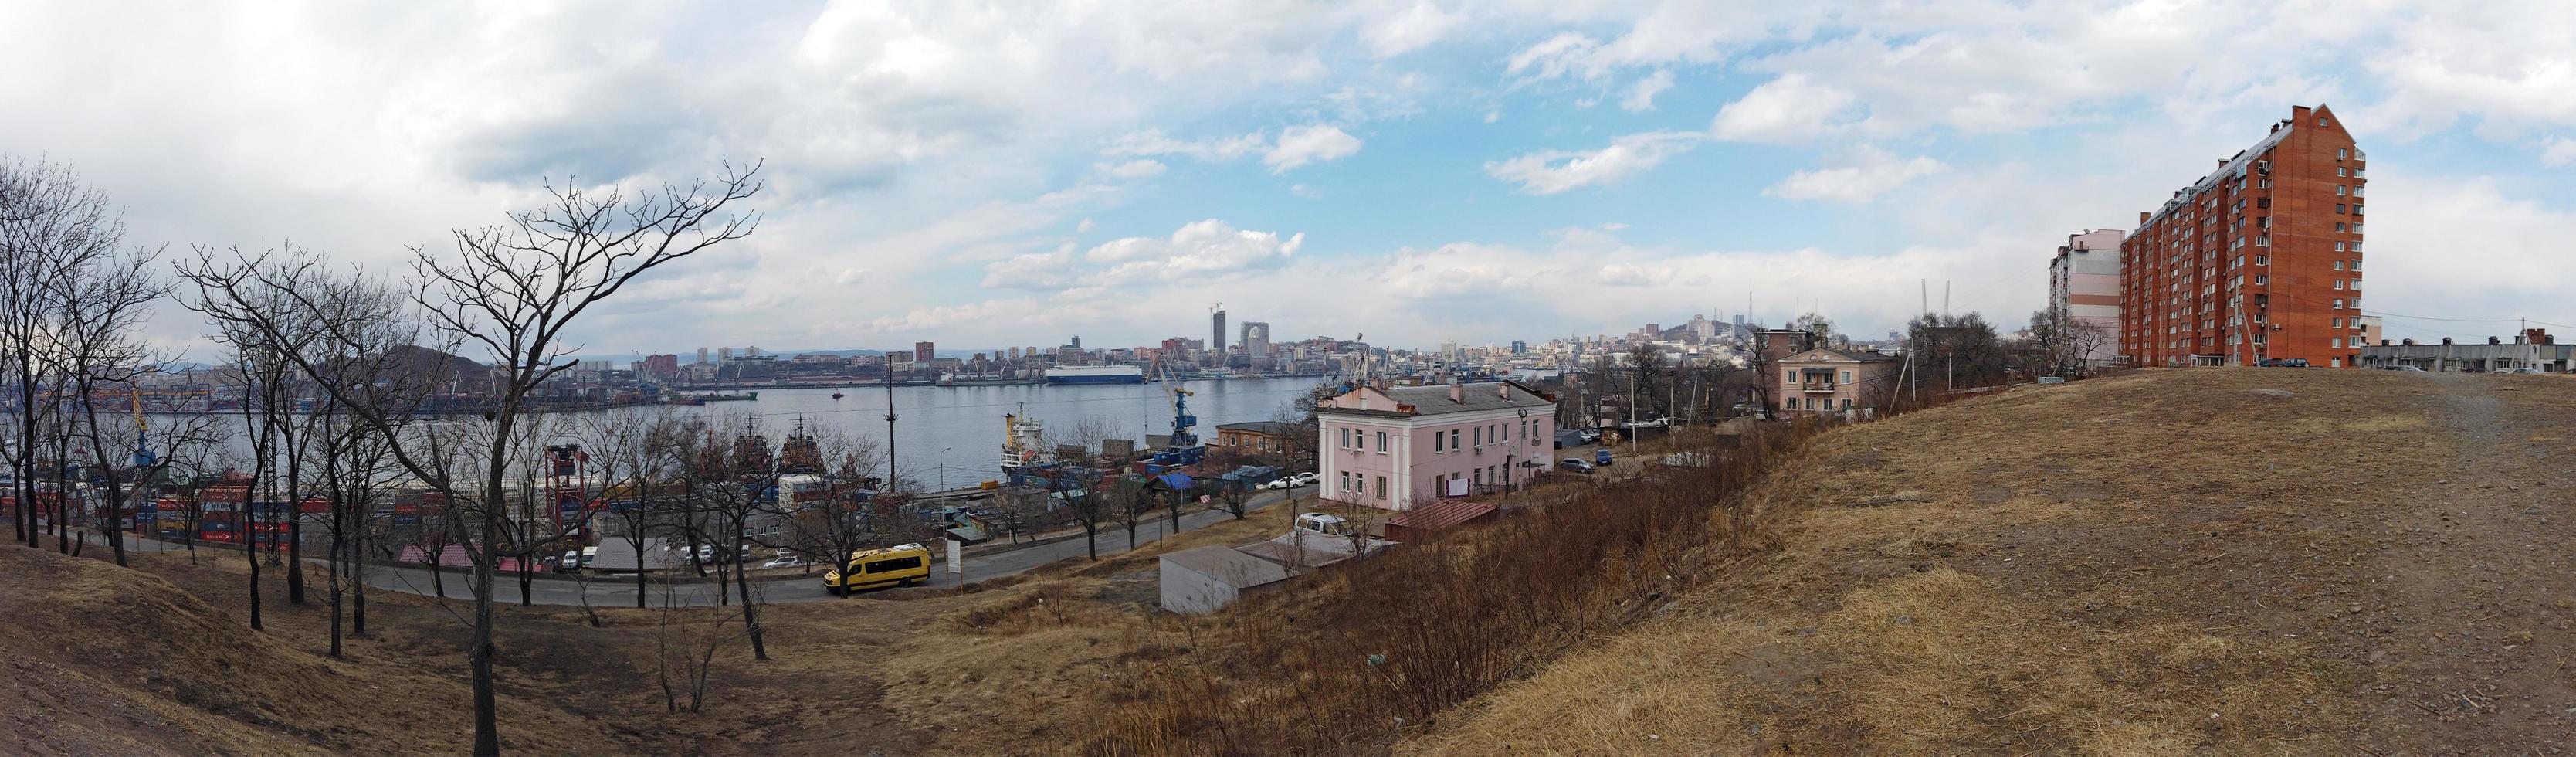 wladiwostok, primorsky krai - 6. april 2018-panorama des stadtbildes mit blick auf die bucht. foto